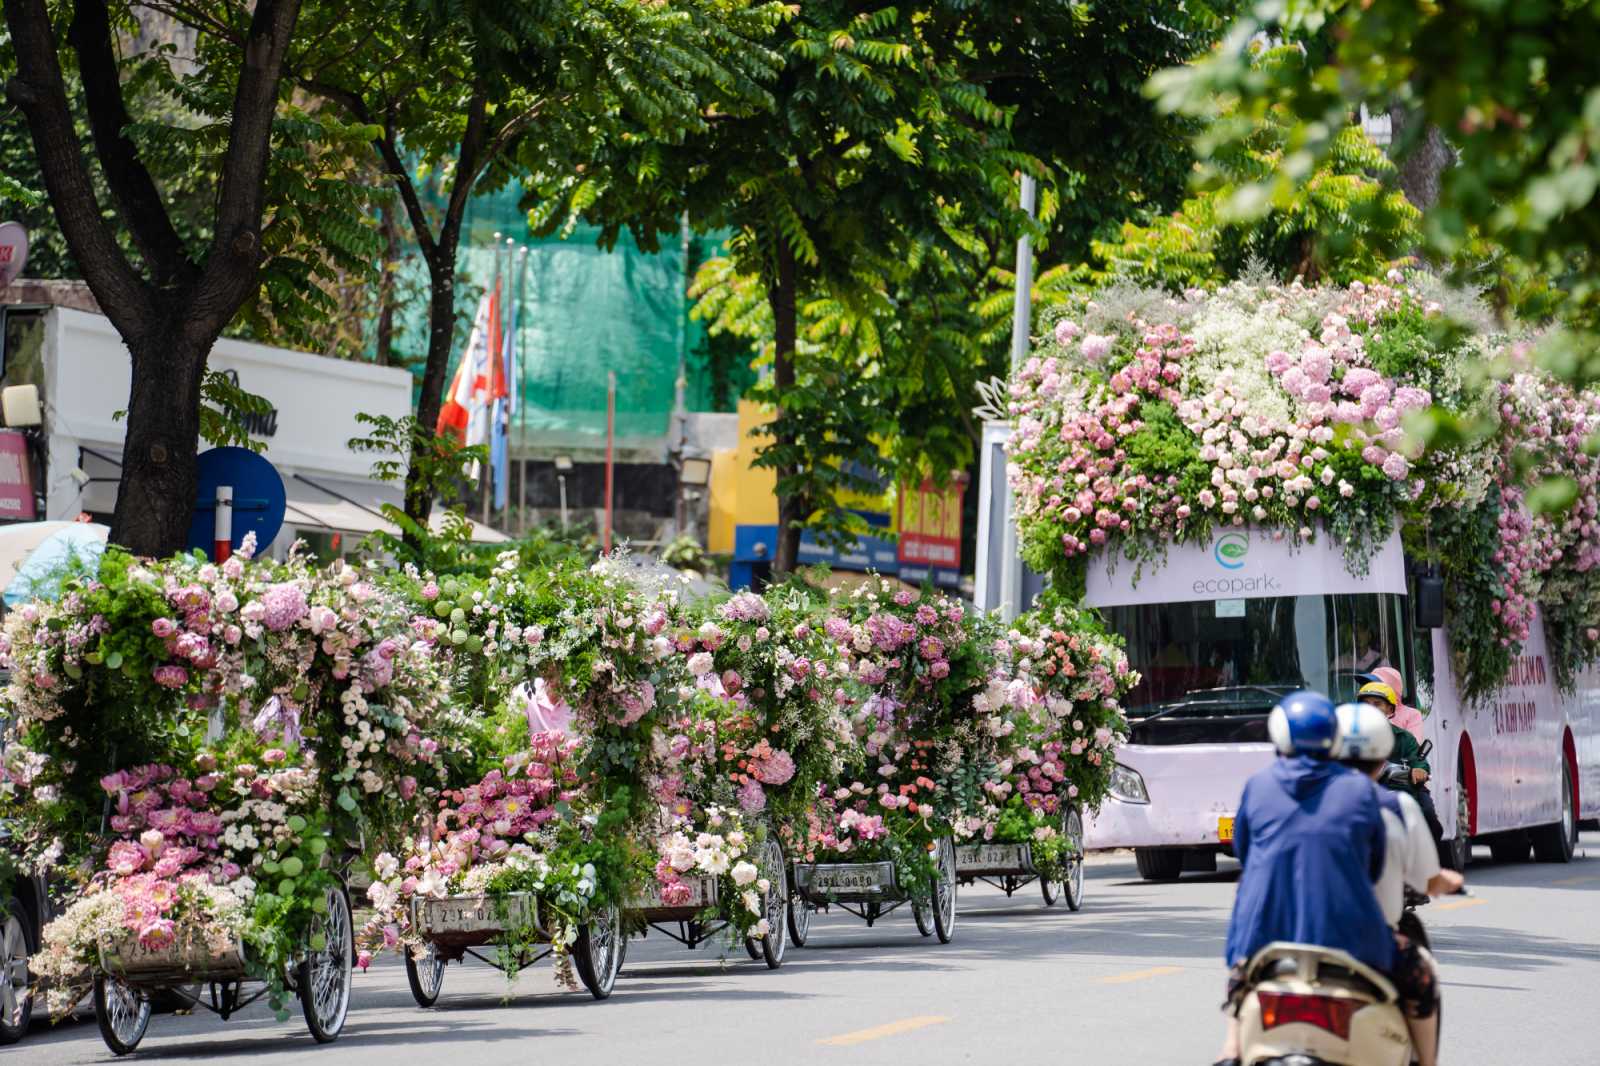 Roadshow siêu ấn tượng với đoàn xe phủ ngập tràn hoa sen trên đường phố Thủ đô - 1